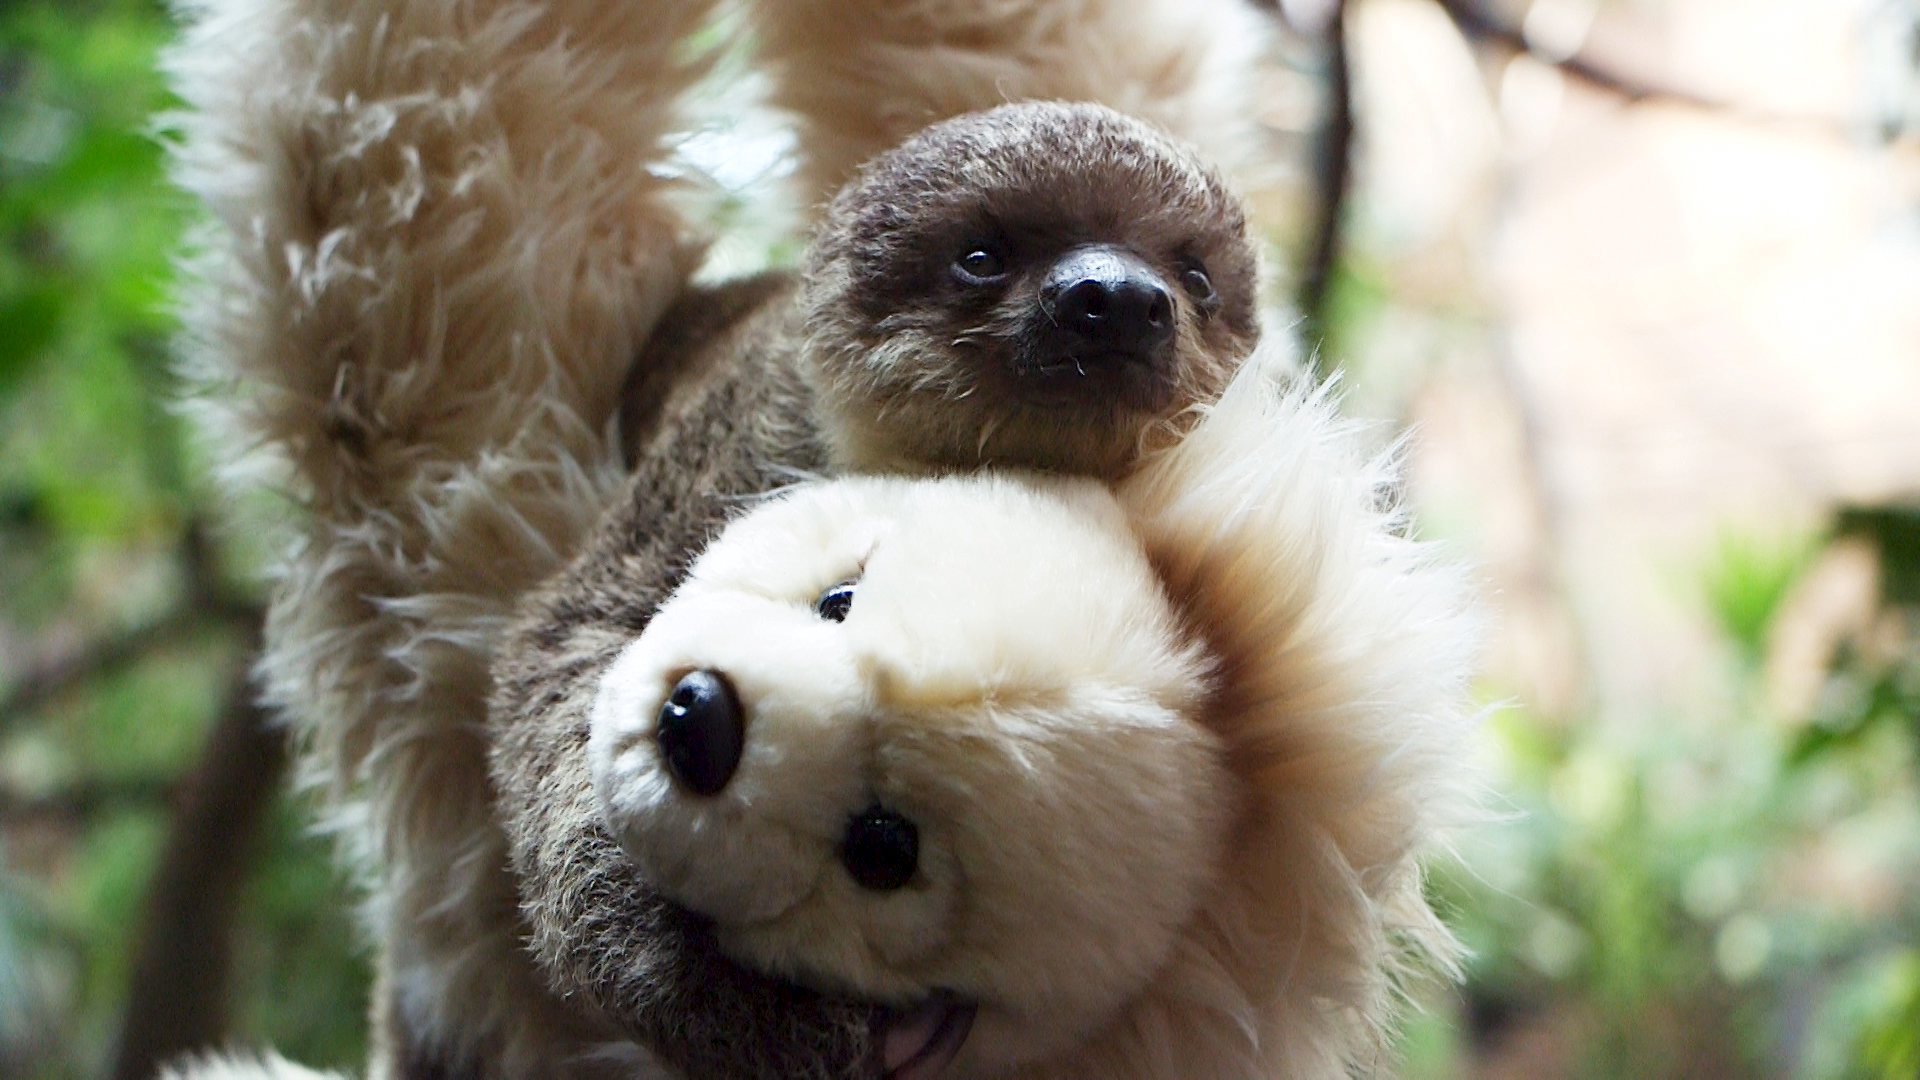 sloth teddys